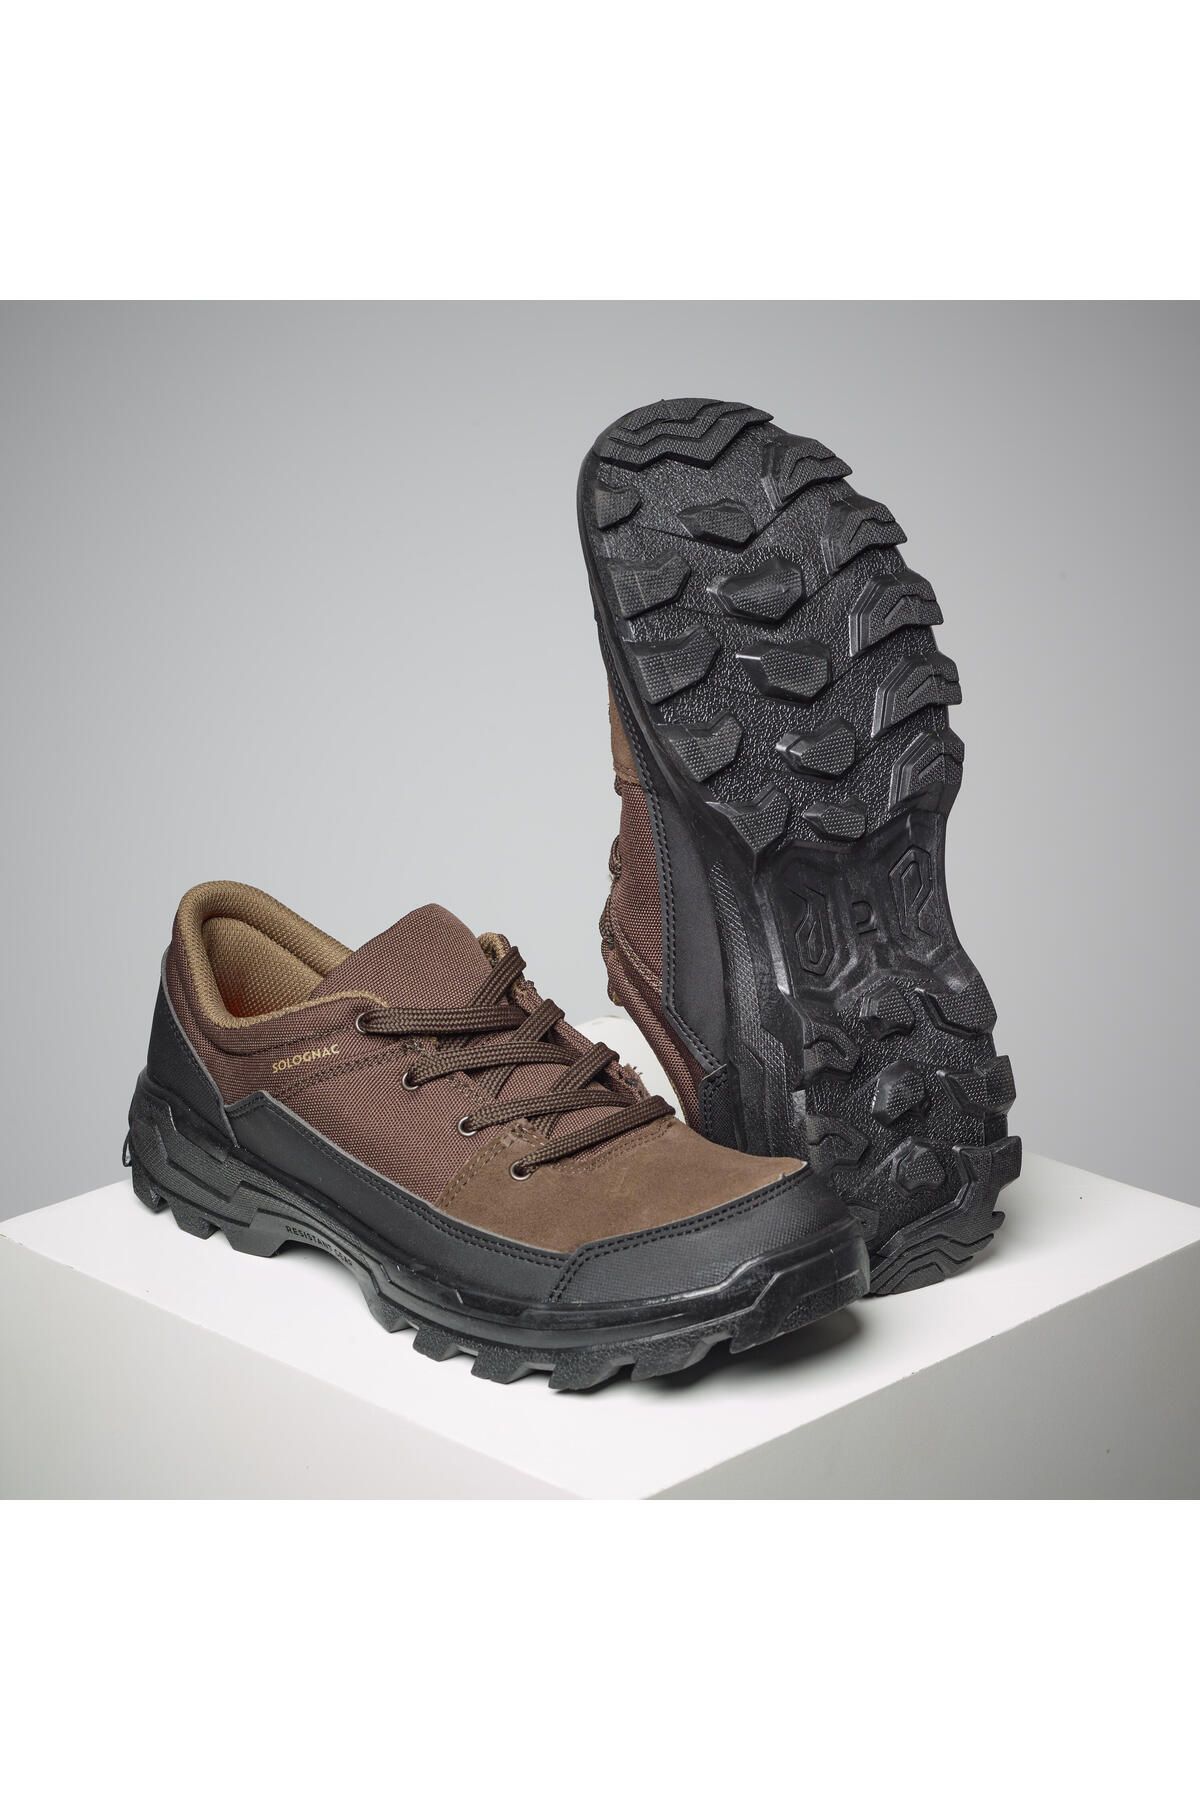 Decathlon Outdoor Ayakkabı - Kahverengi - Avcılık Ve Doğa Gözlemi - Crosshunt 100